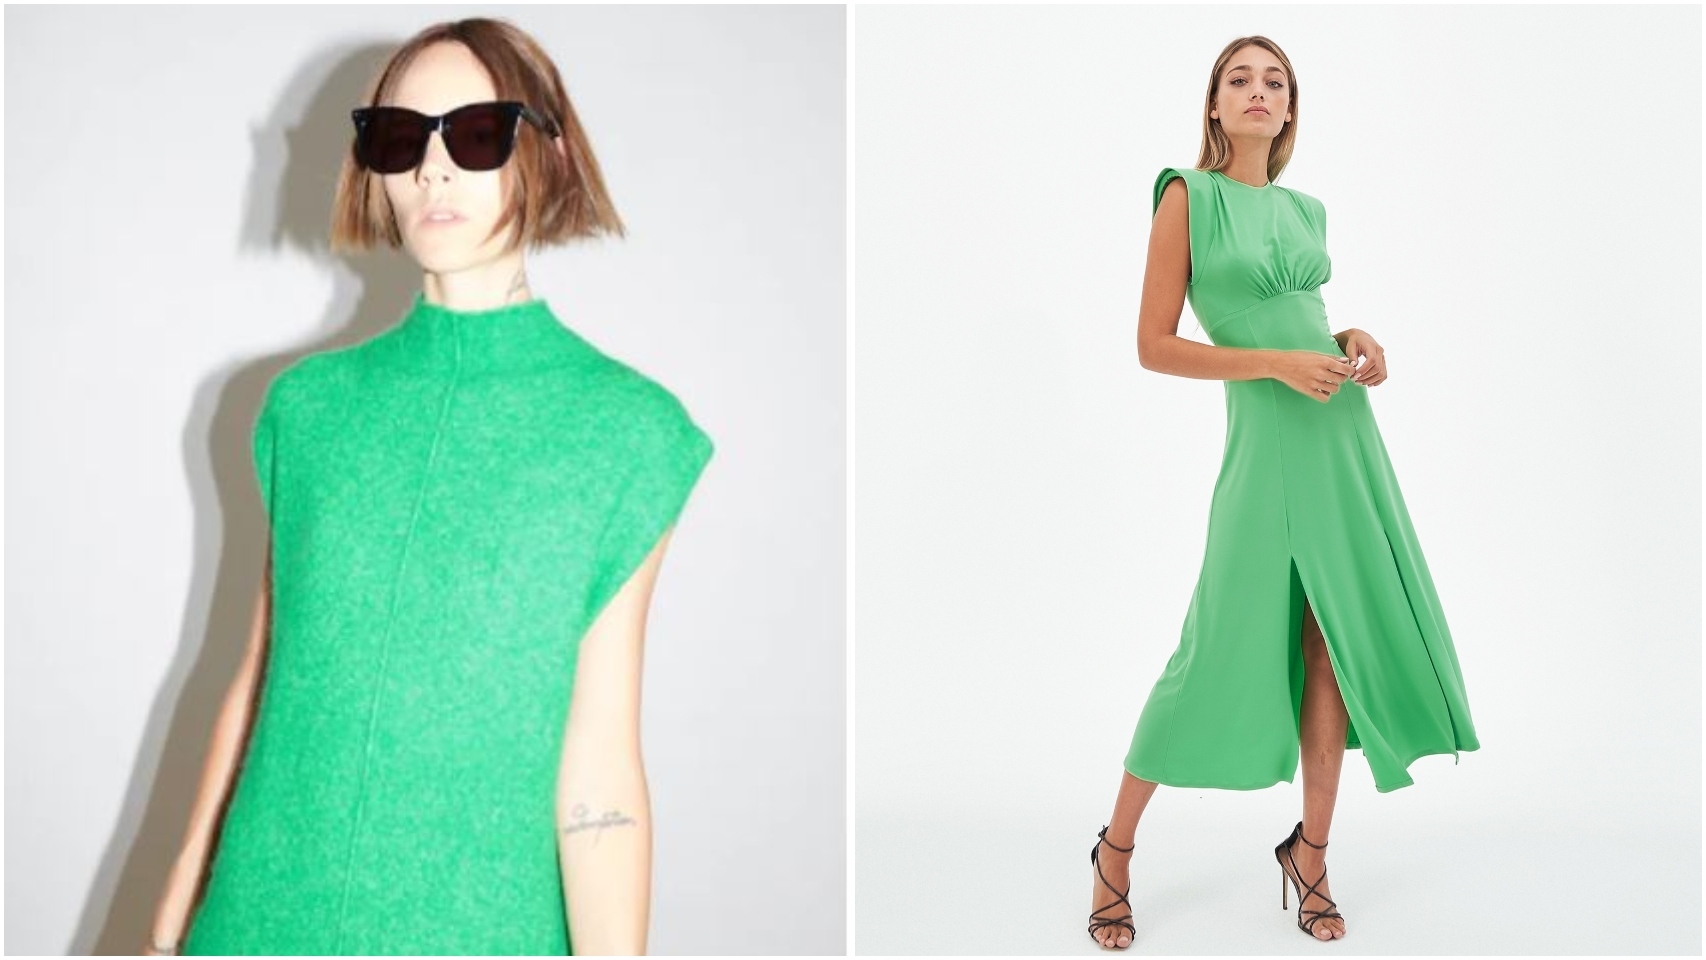 Modelo vestida de Zara, a la derecha y modelo vestida de Claro, a la izquierda.